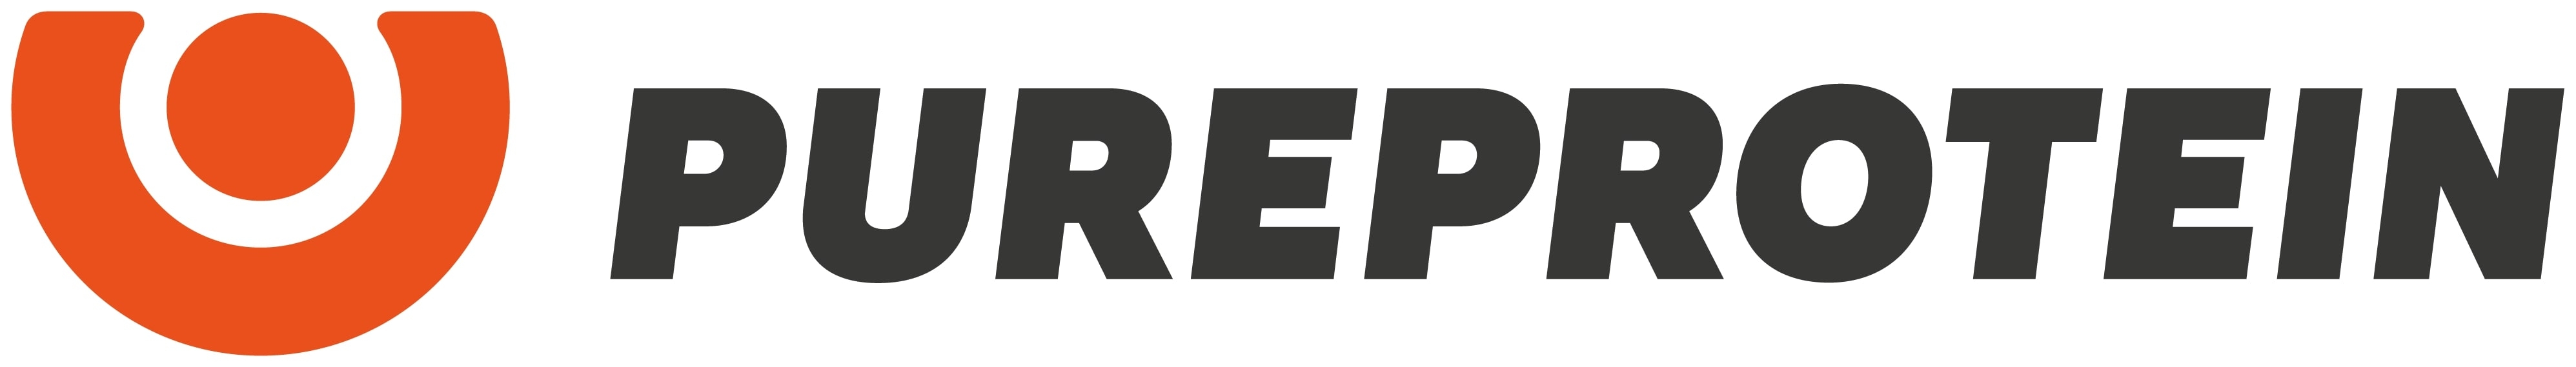 Логотип Pureprotein